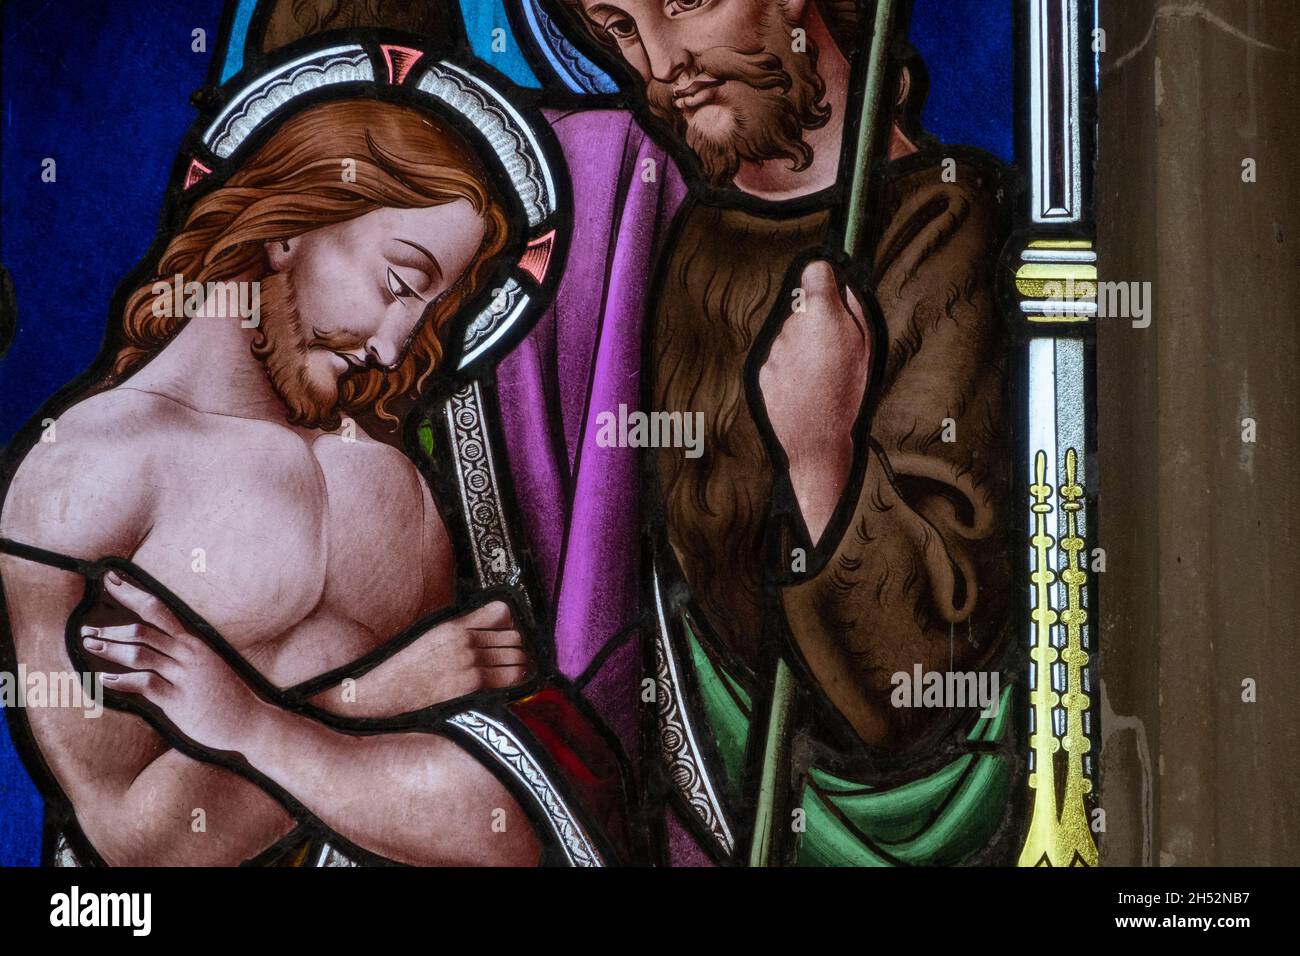 Details aus einem Buntglasfenster mit Christus in der St. Andrew's Church Marlesford, Suffolk, Großbritannien Stockfoto